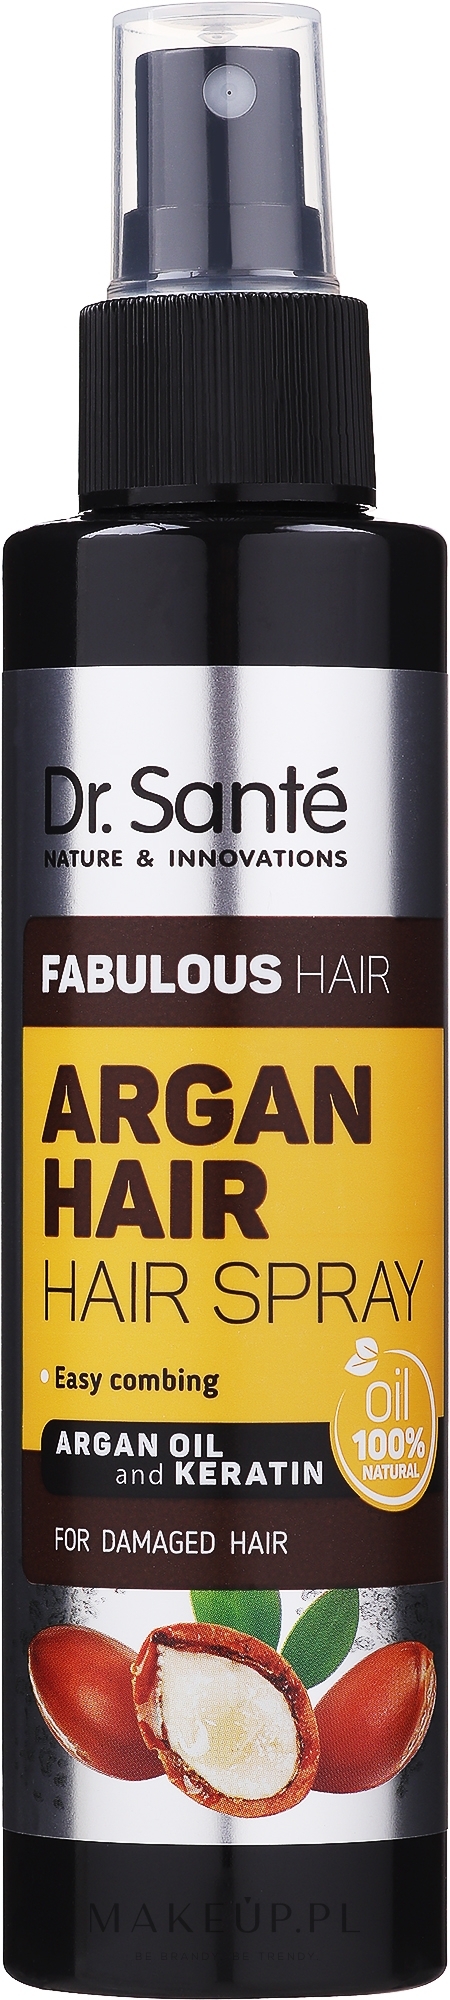 olejek arganowy do rozczesywania włosów